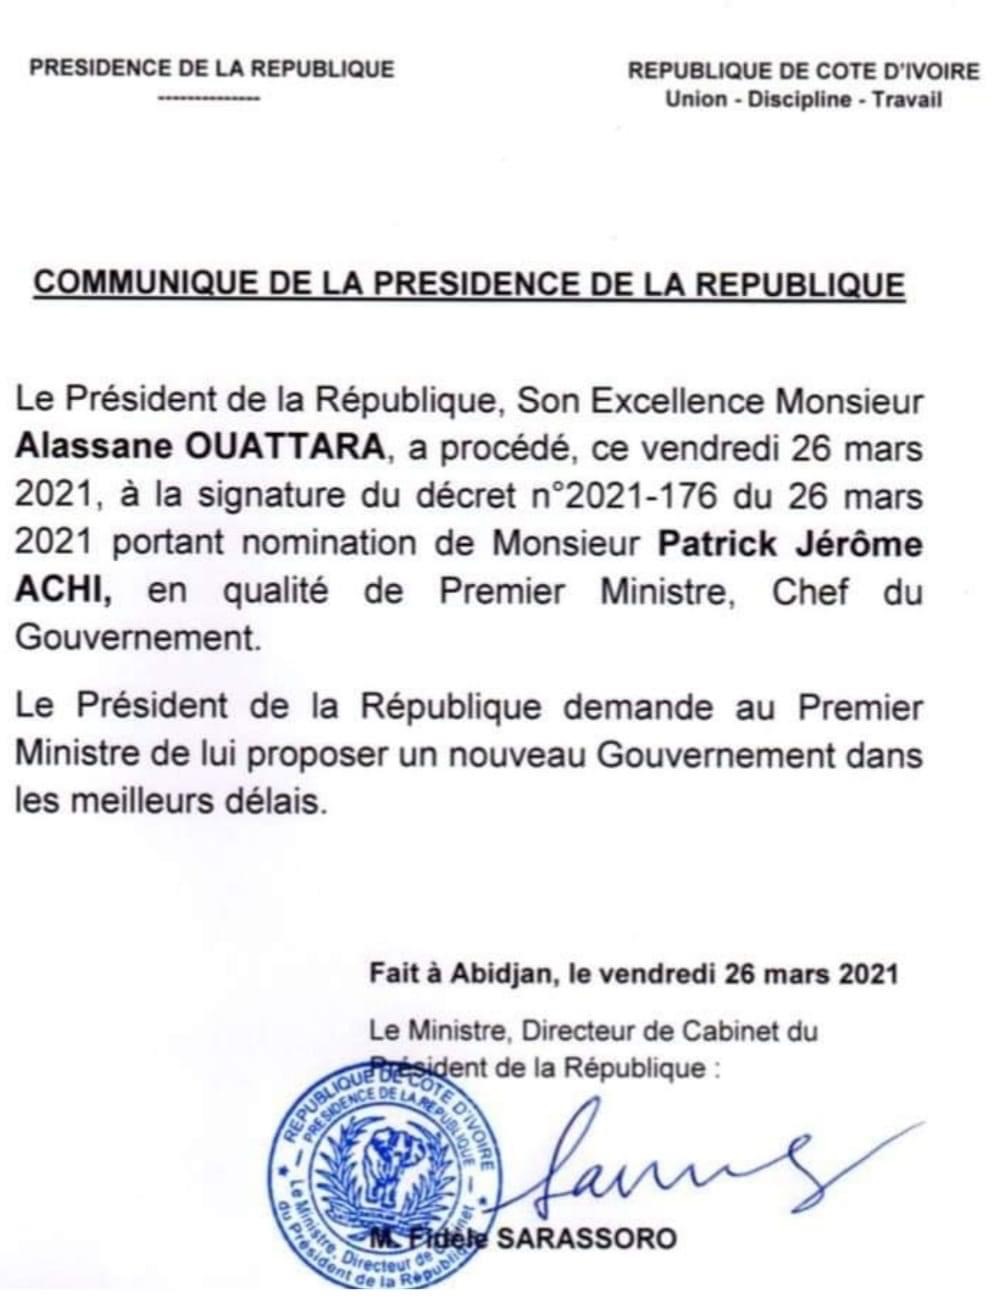 Côte d’Ivoire : démission du Premier Ministre Patrick Achi